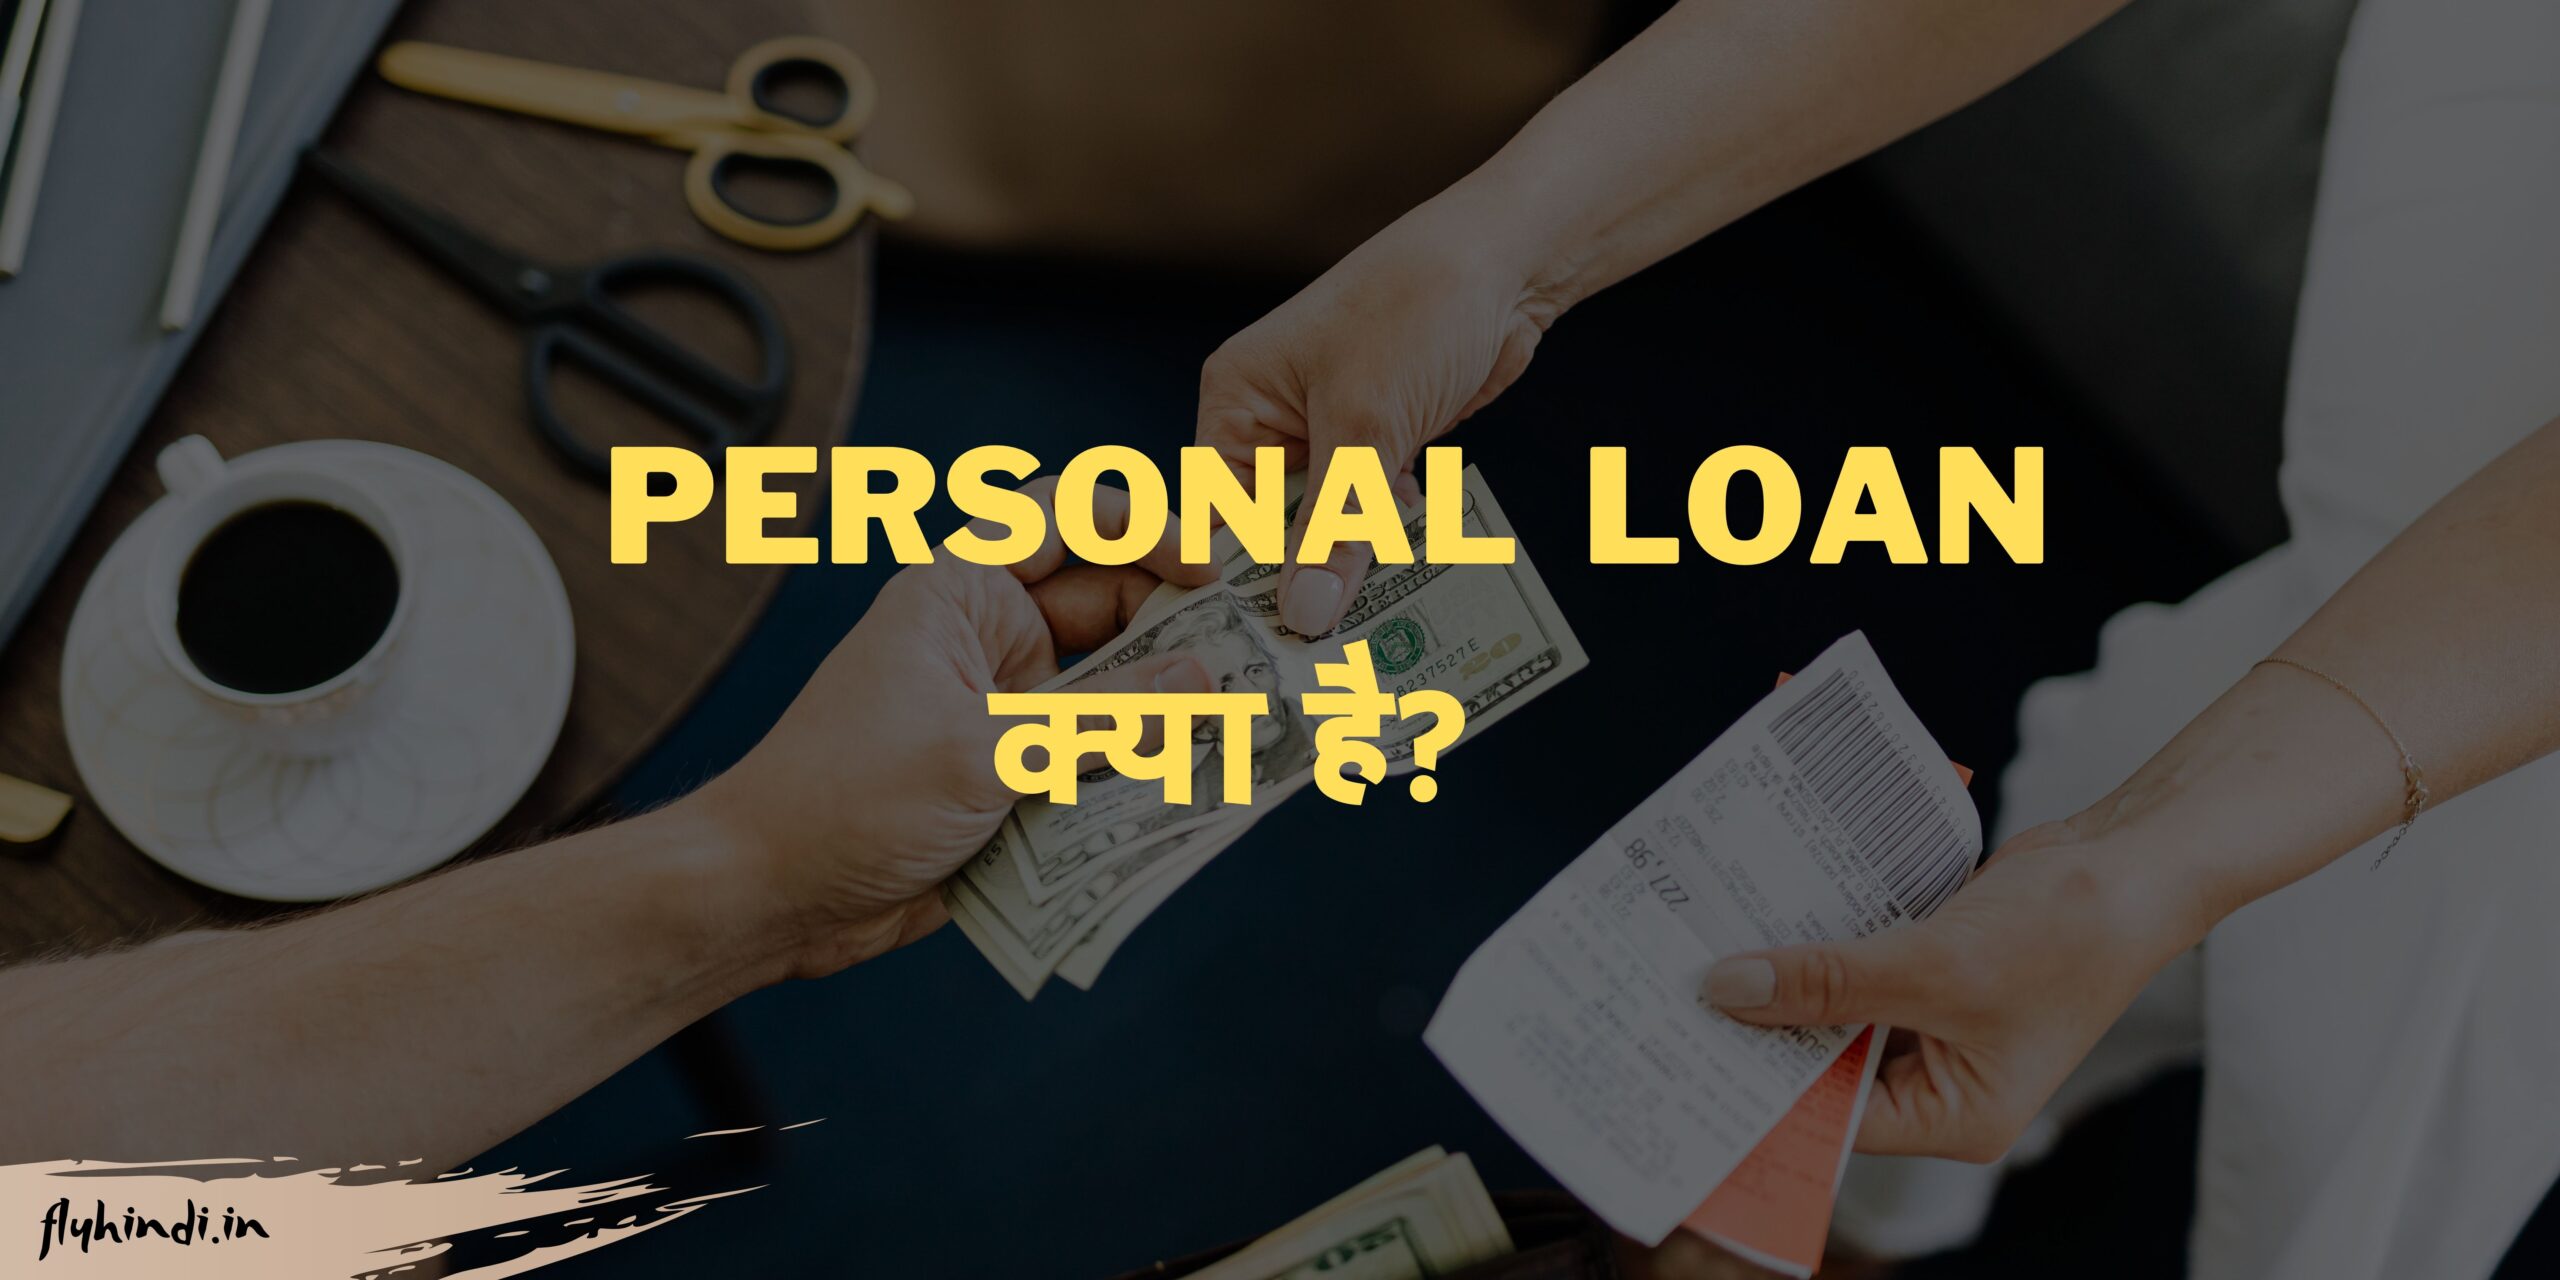 Personal Loan क्या है? पात्रता, आवश्यक दस्तावेज, ब्याज दर एवं पूरी जानकारी